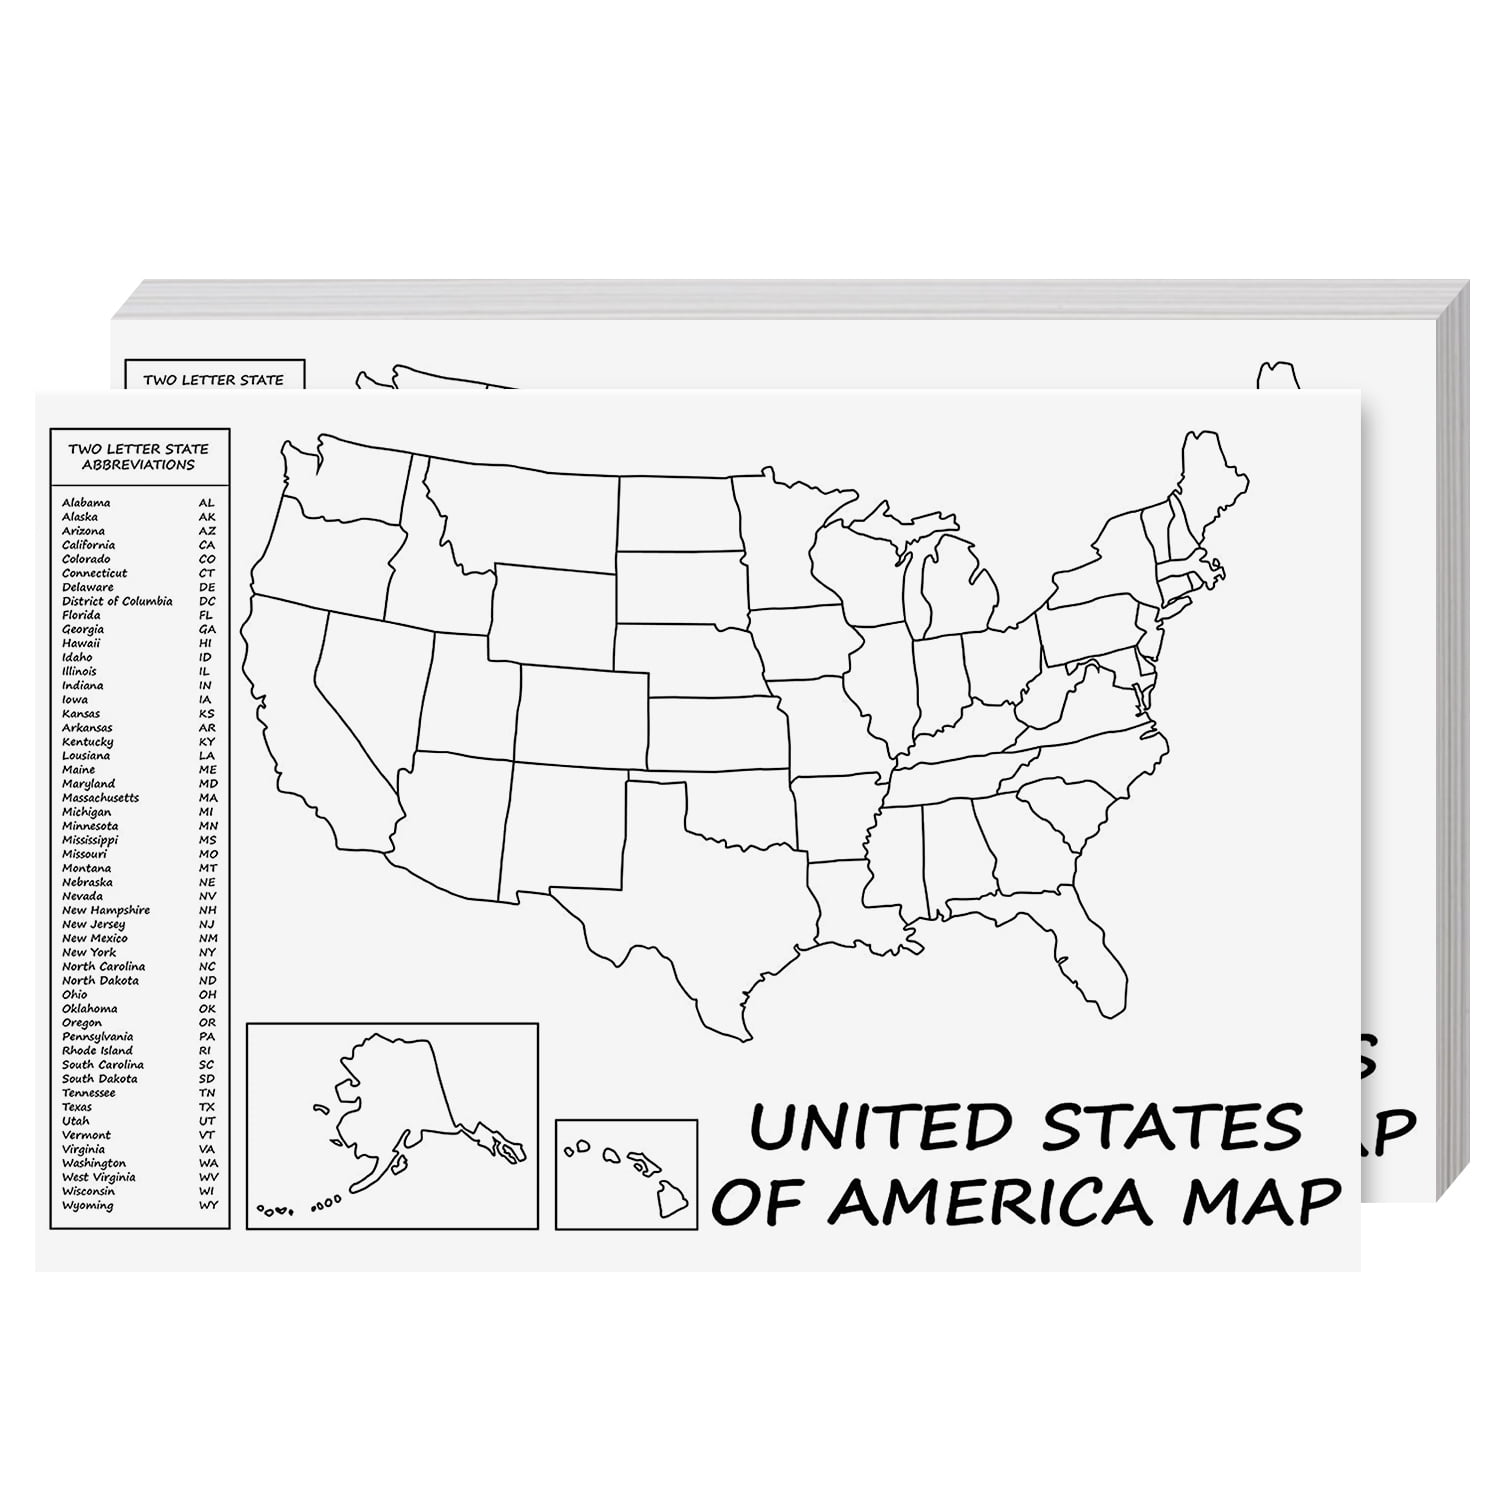 NEBRASKA  and OKLAHOMA  STATE MAP JUMBO  MAGNETS  7 COLOR   NEW USA  2 MAGNETS 